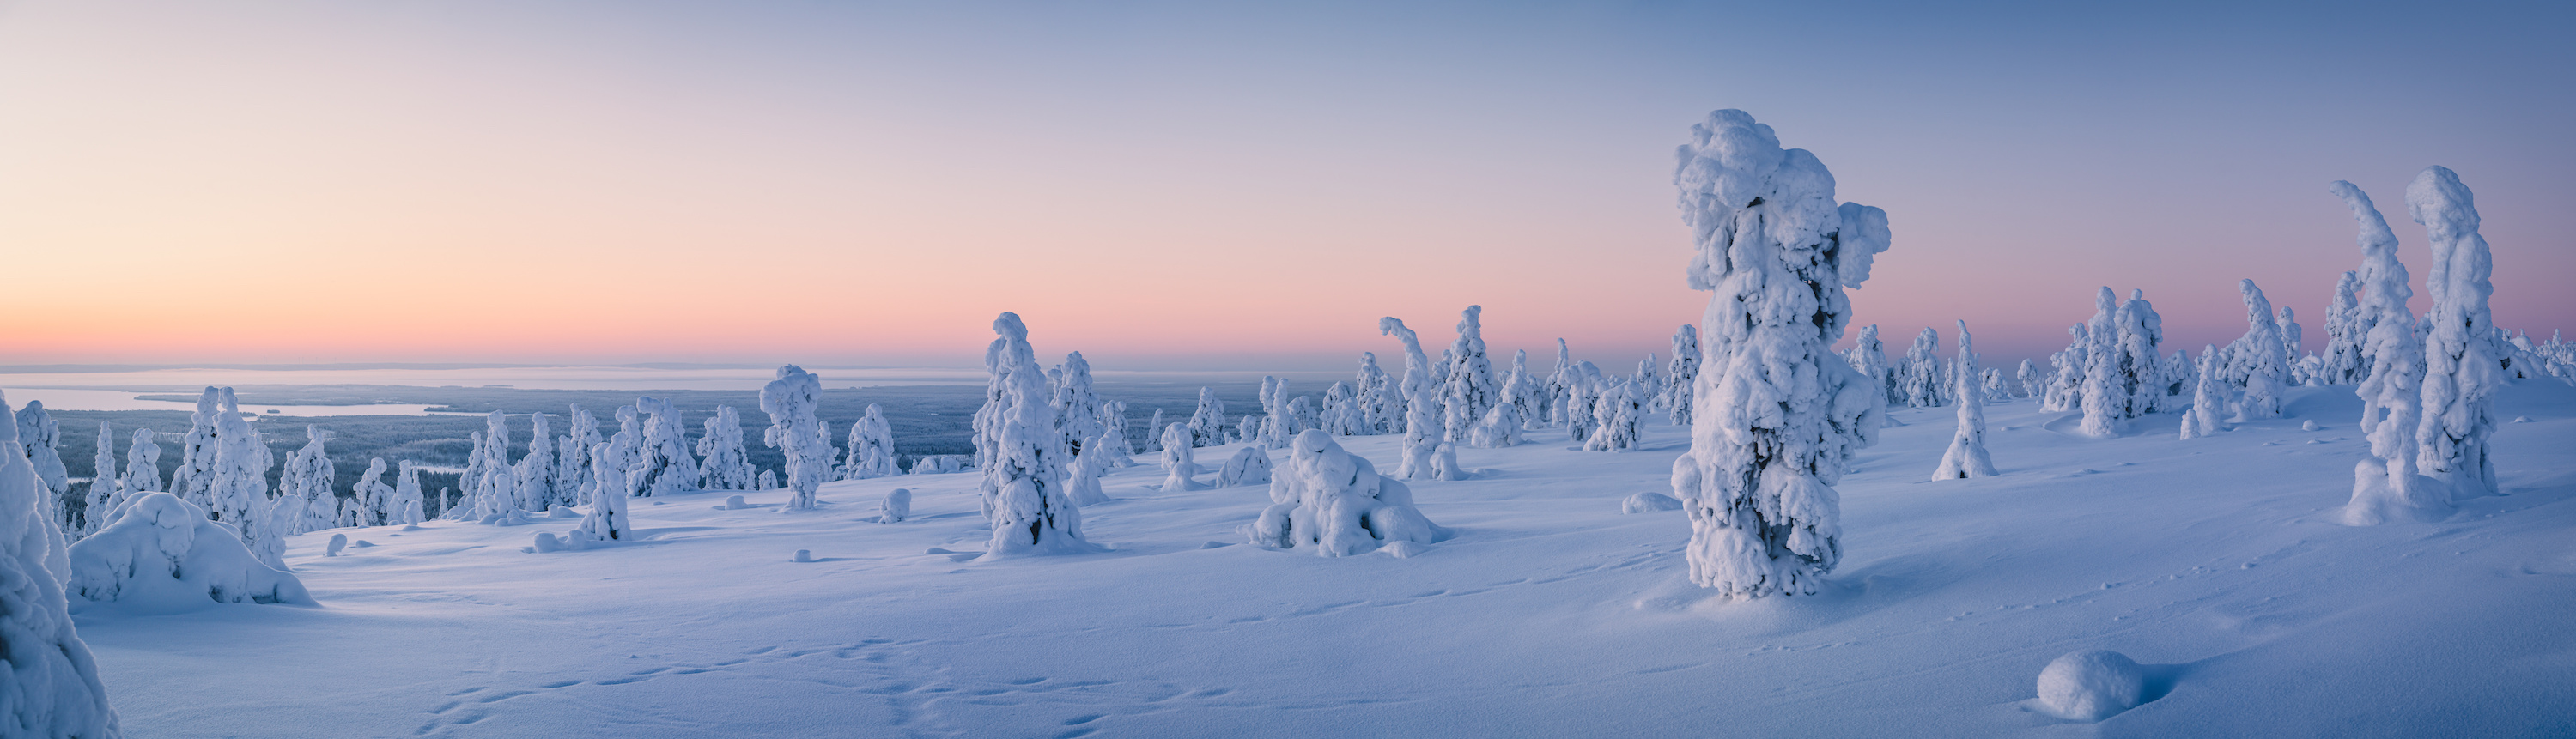 Paysage enneigé du cercle arctique en Finlande. C'est ici qu'a été découvert un important site archéologique datant de 6 500 ans. © Jamo Images, Adobe Stock